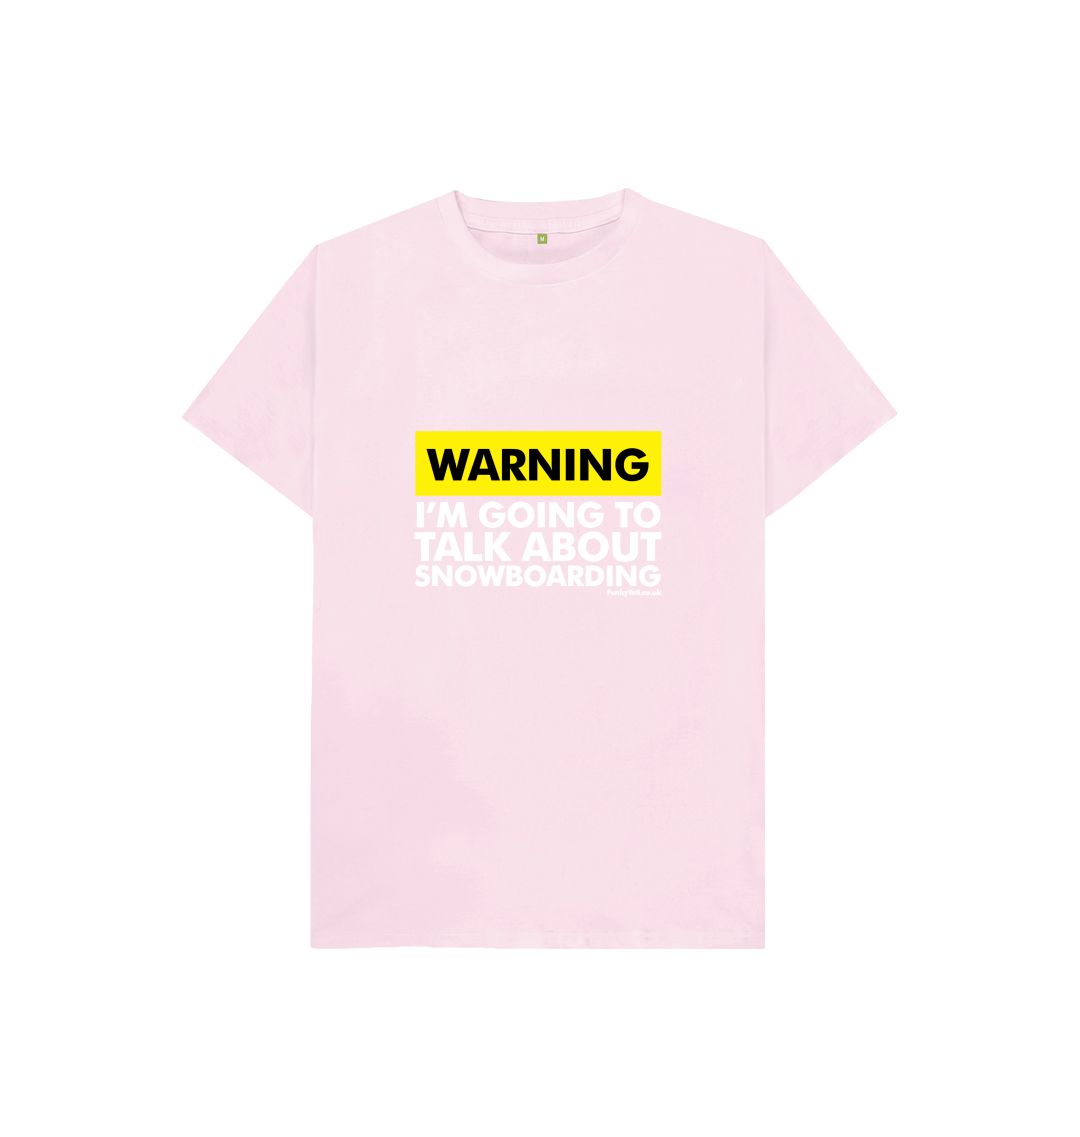 Pink Funky Yeti Kids Tee - Warning, Snowboarder!